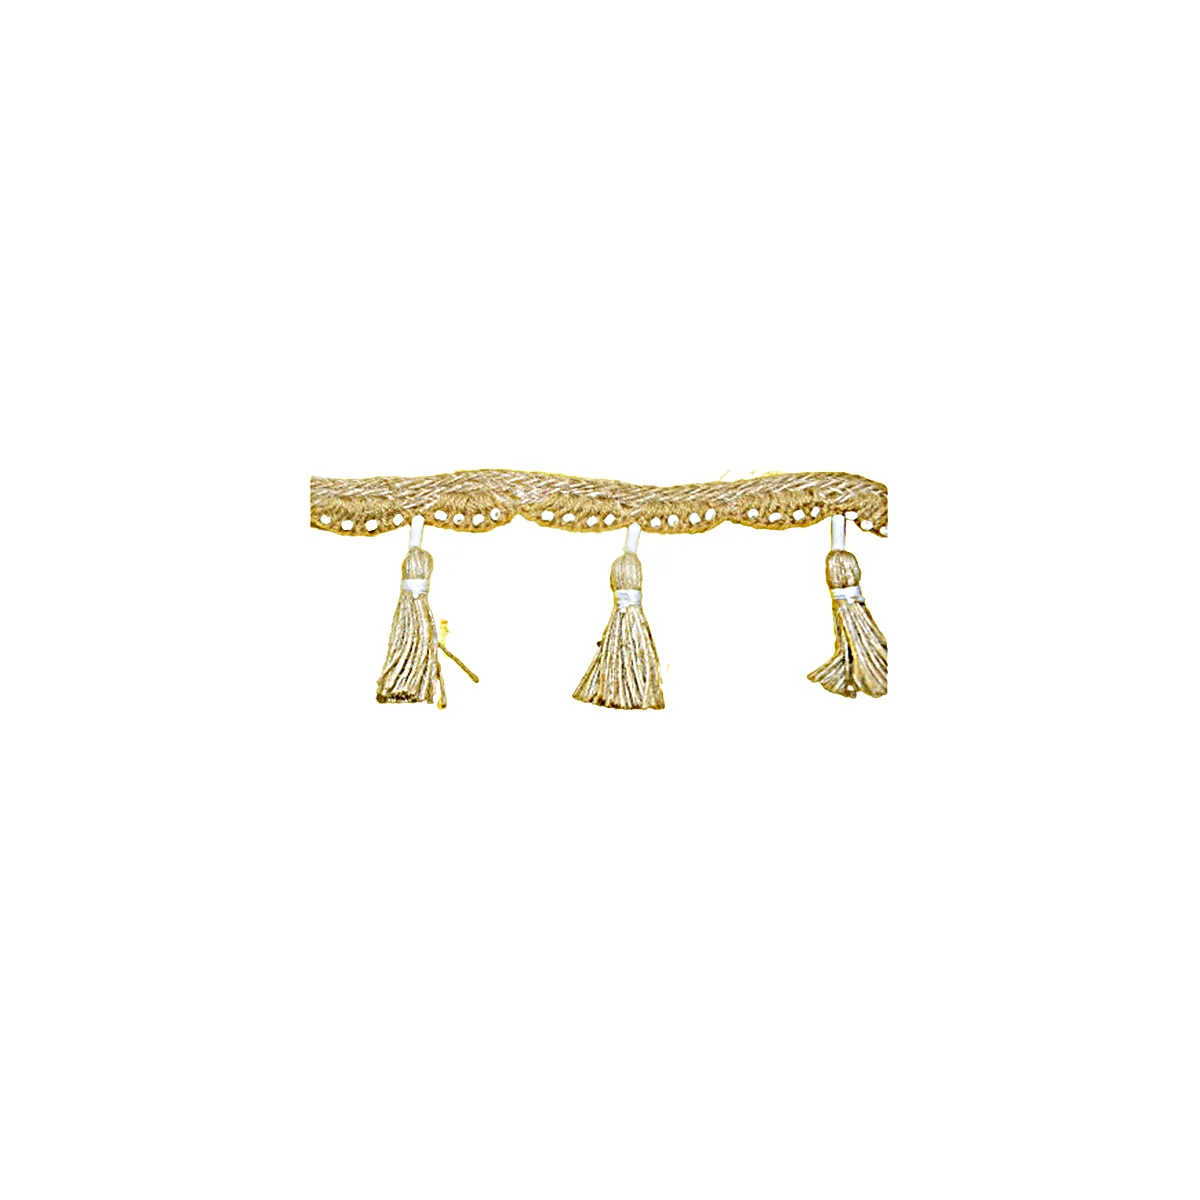 Laço de borla com franja de ouro elegante, enfeite de franja de borla personalizado de tamanho personalizado, de cor dourada do fornecedor